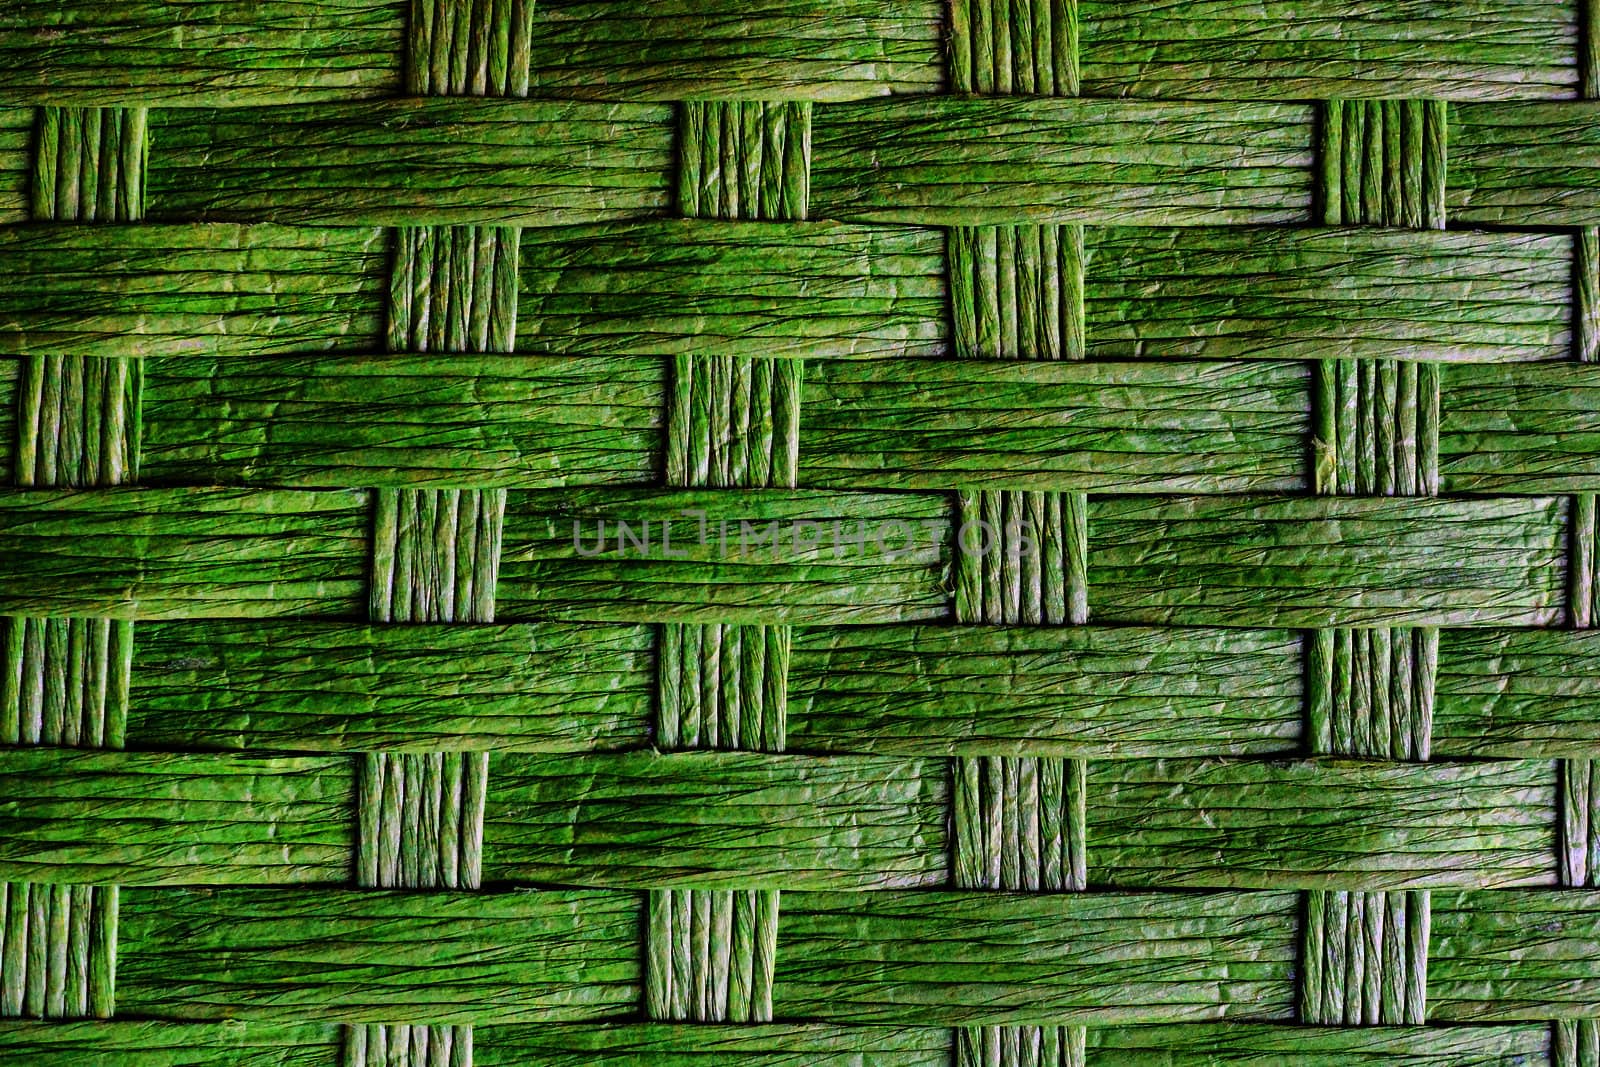 Green wicker basket detail by Mirage3